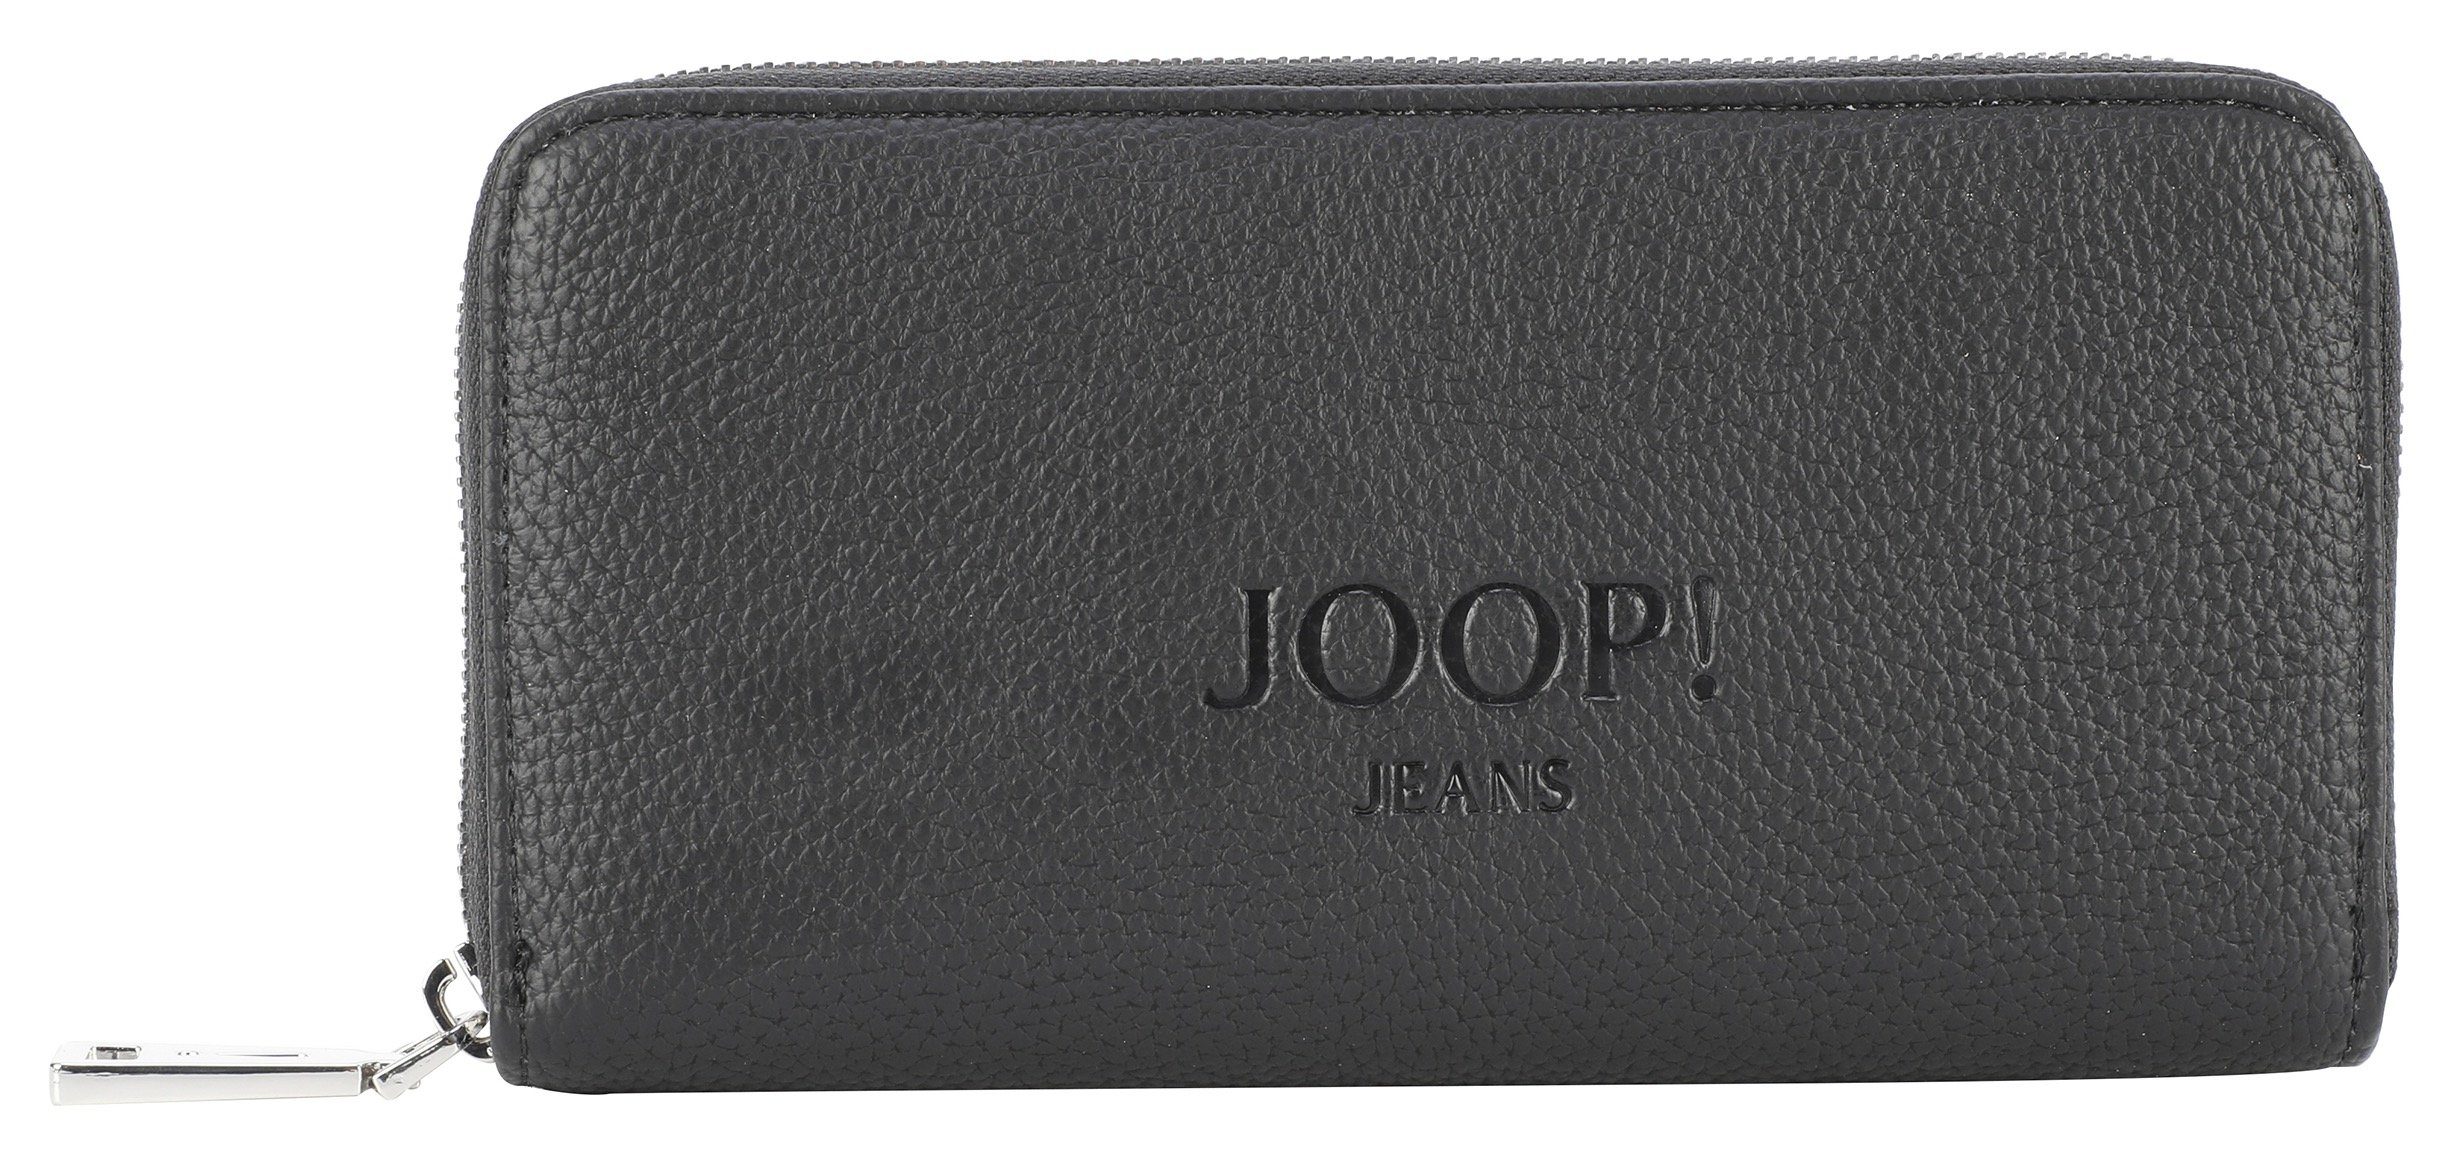 lh10z purse Joop 1.0 Geldbörse black lettera Jeans melete